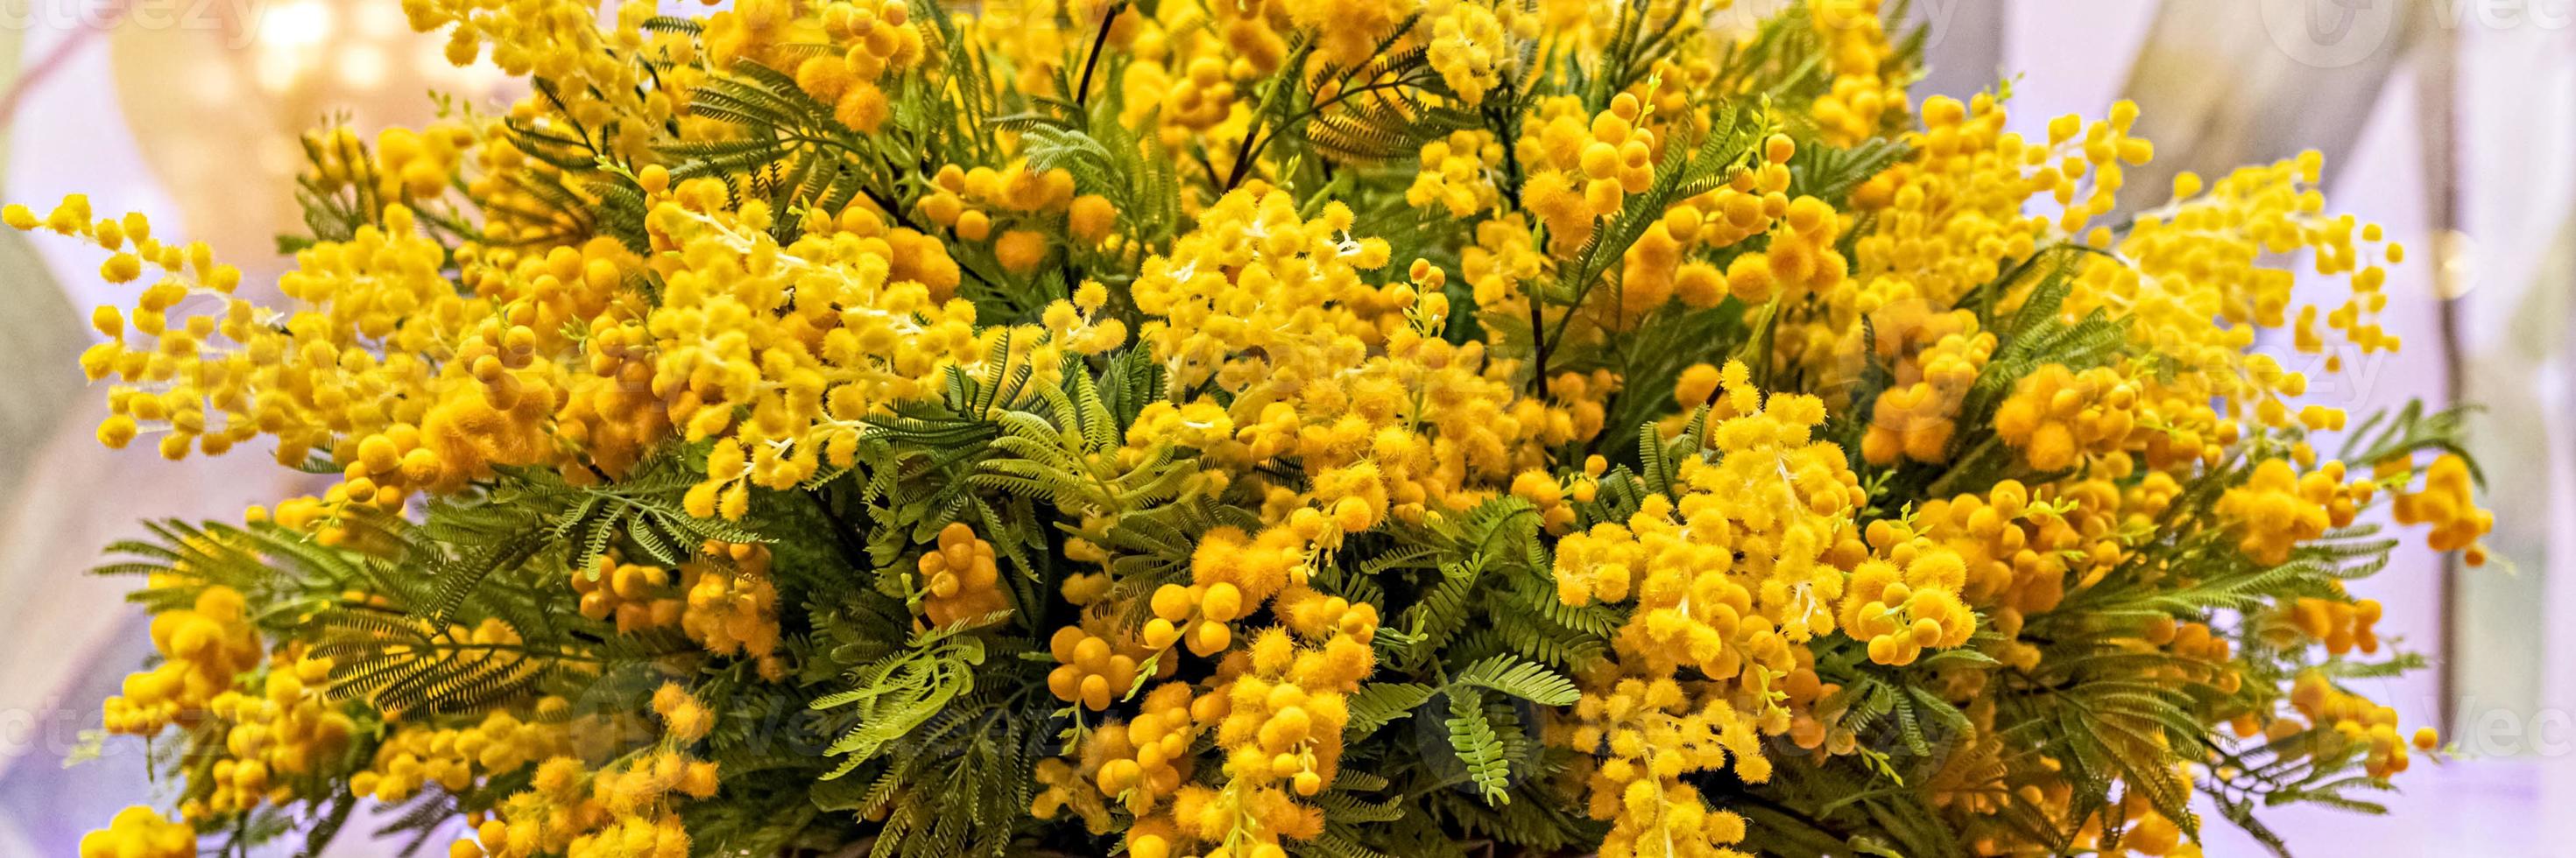 un ramo de ramas amarillas en flor de acacia plateada en una canasta de mimbre alta foto